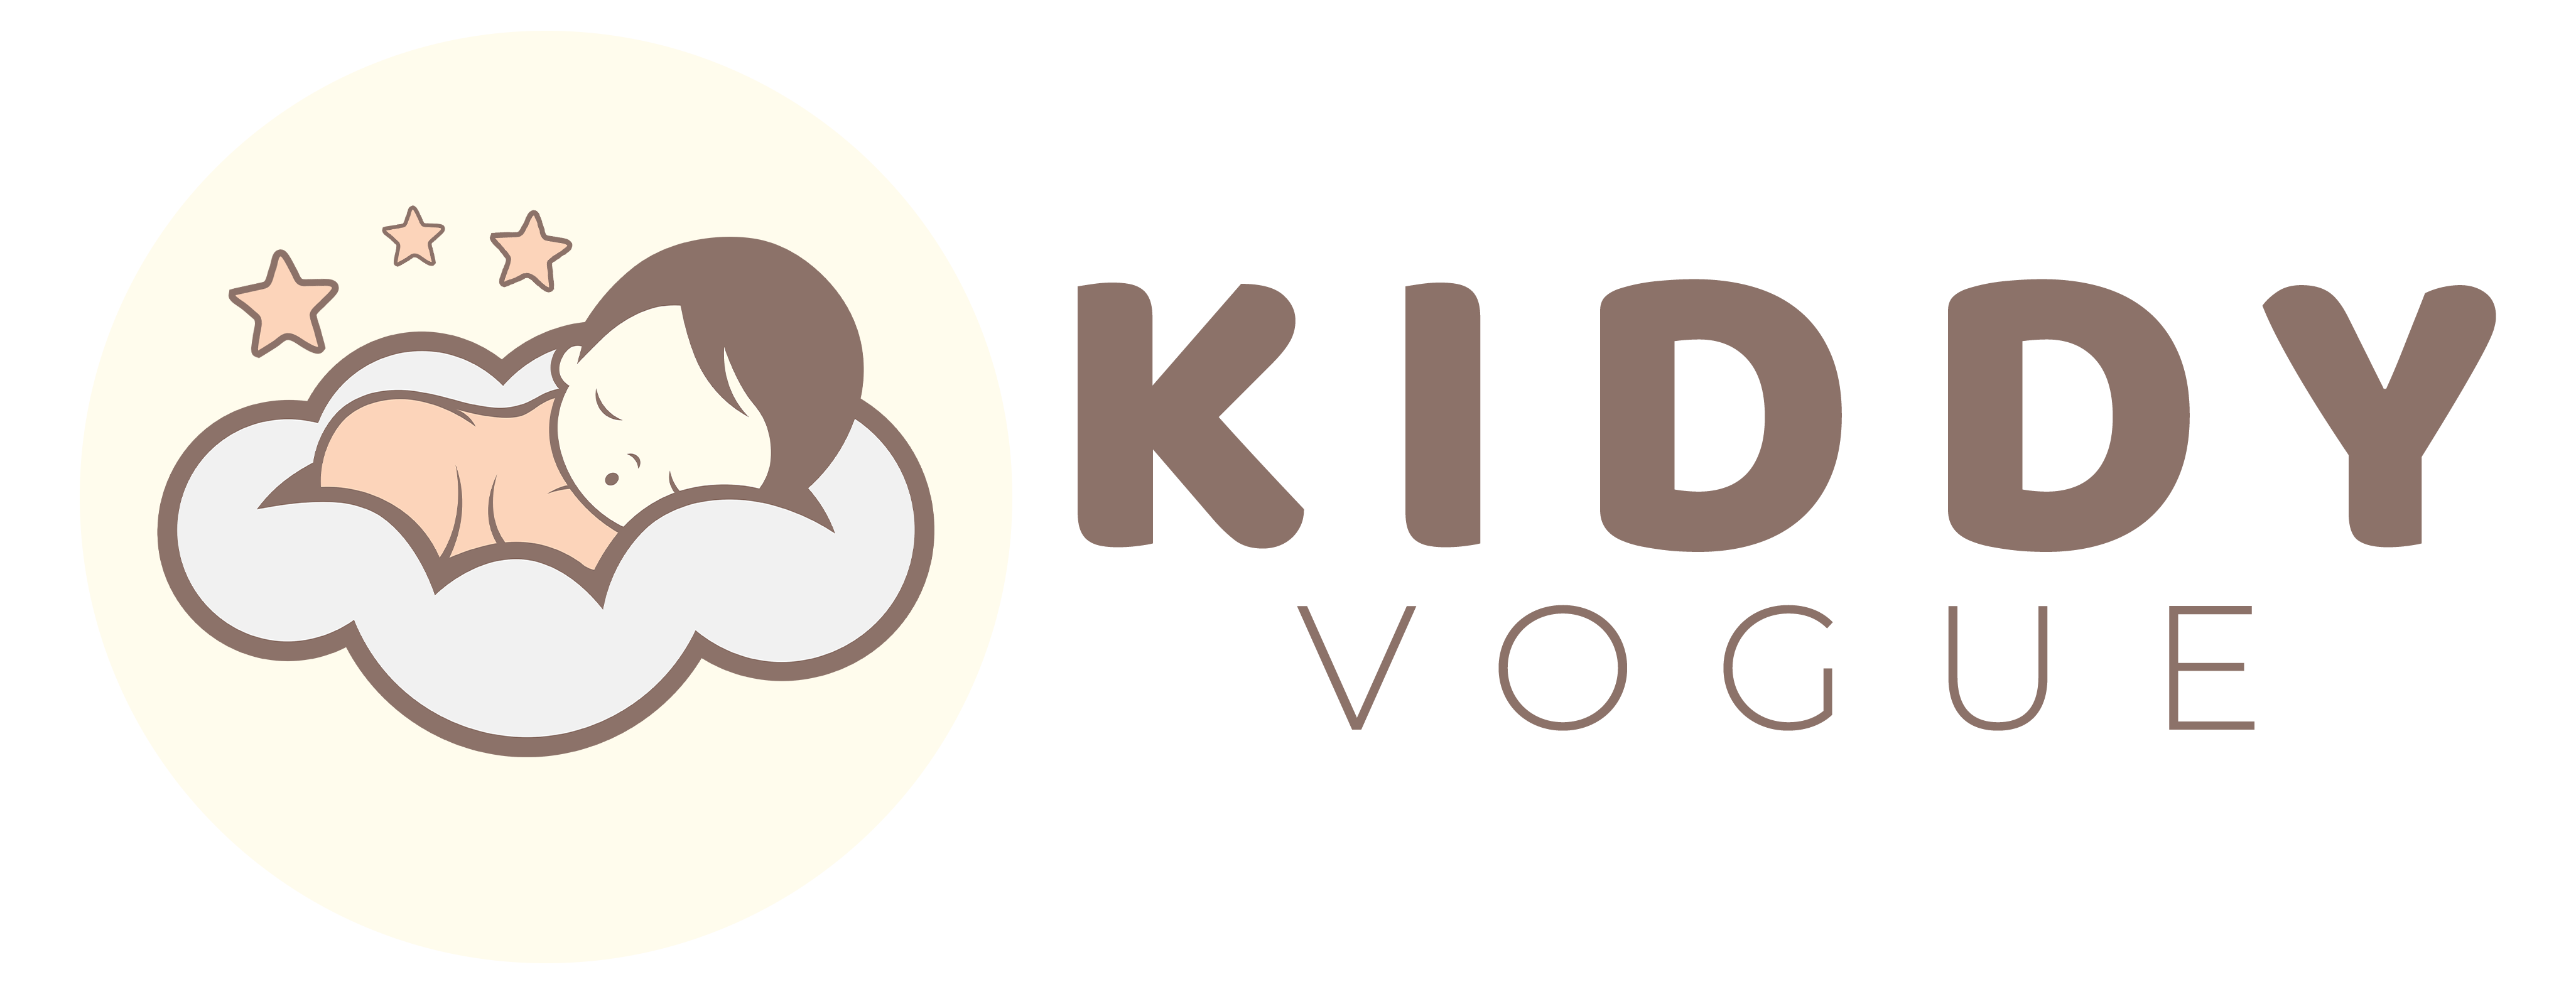 KiddyVogue